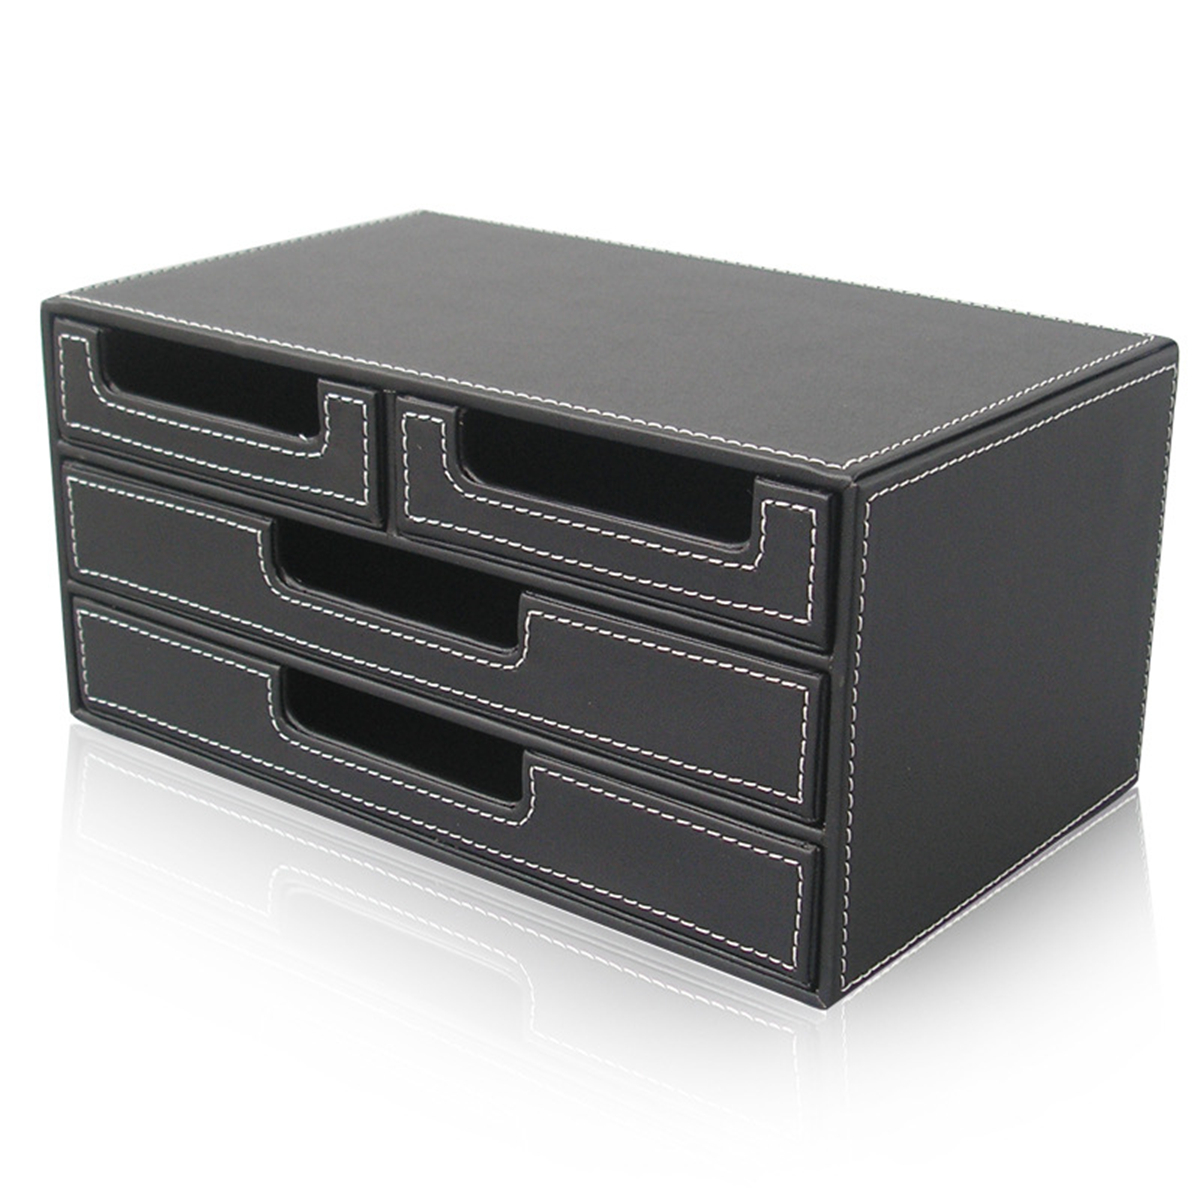 3 Layer 4 Drawer Wood Leather Desk Set, Leather Filing Cabinet Black